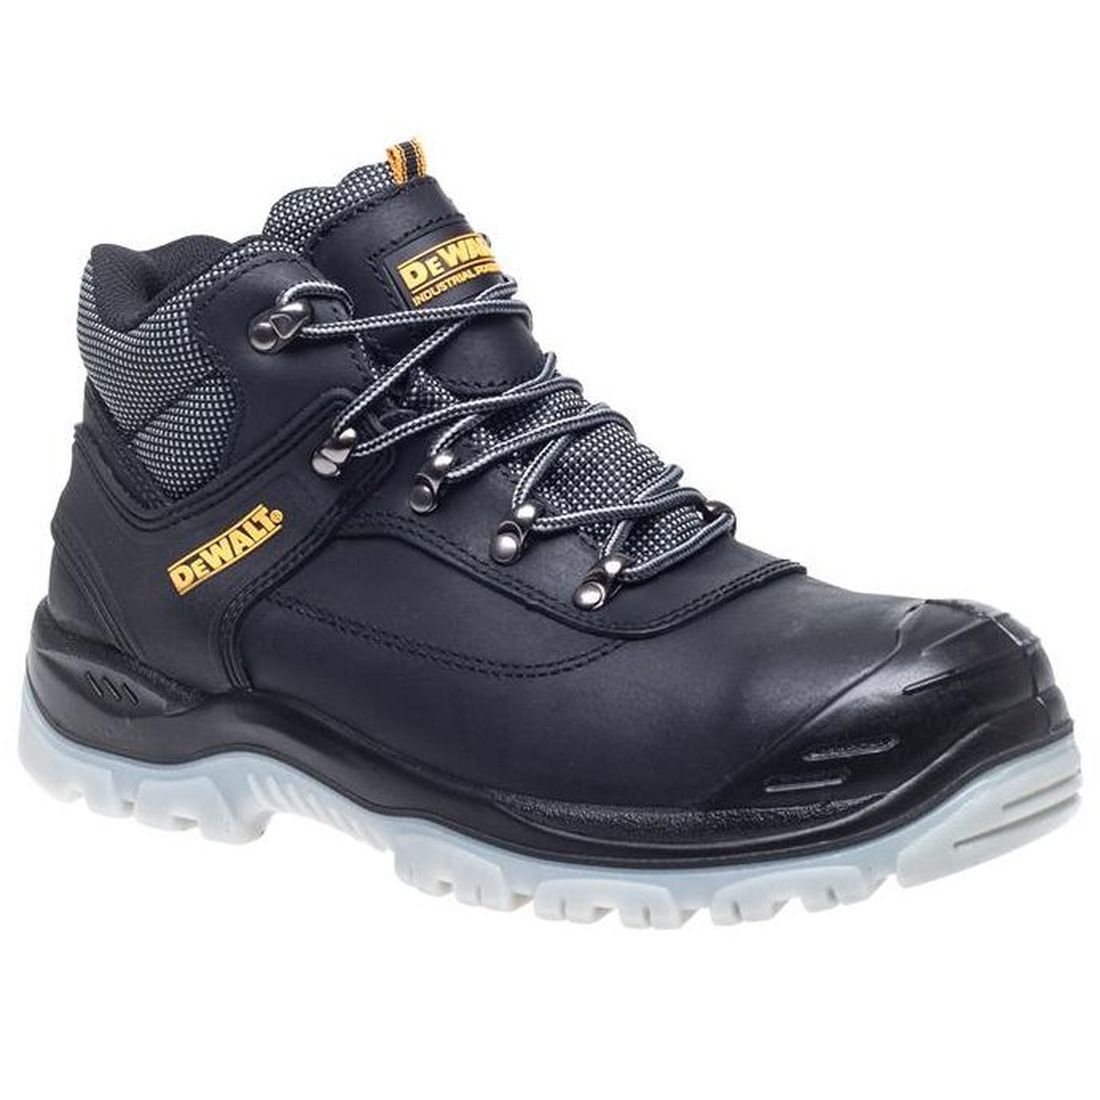 DEWALT Laser Safety Hiker Boots Black UK 6 EUR 39                                      